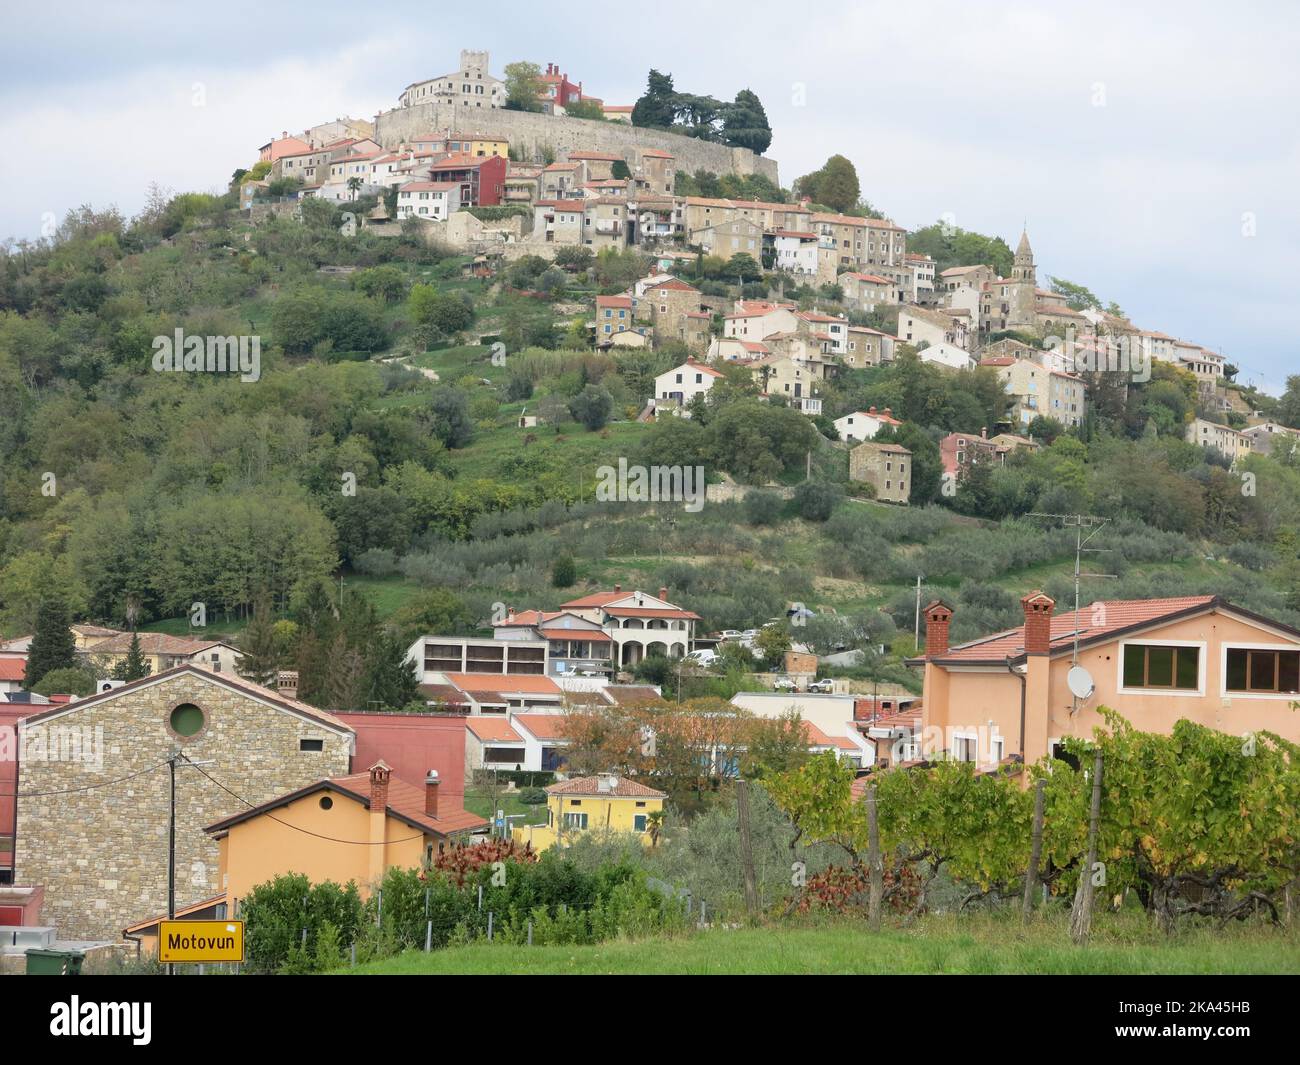 Turismo croato: Vista della città collinare di Motovun, un insediamento medievale arroccato sulla cima di una collina nell'Istria centrale, Croazia. Foto Stock